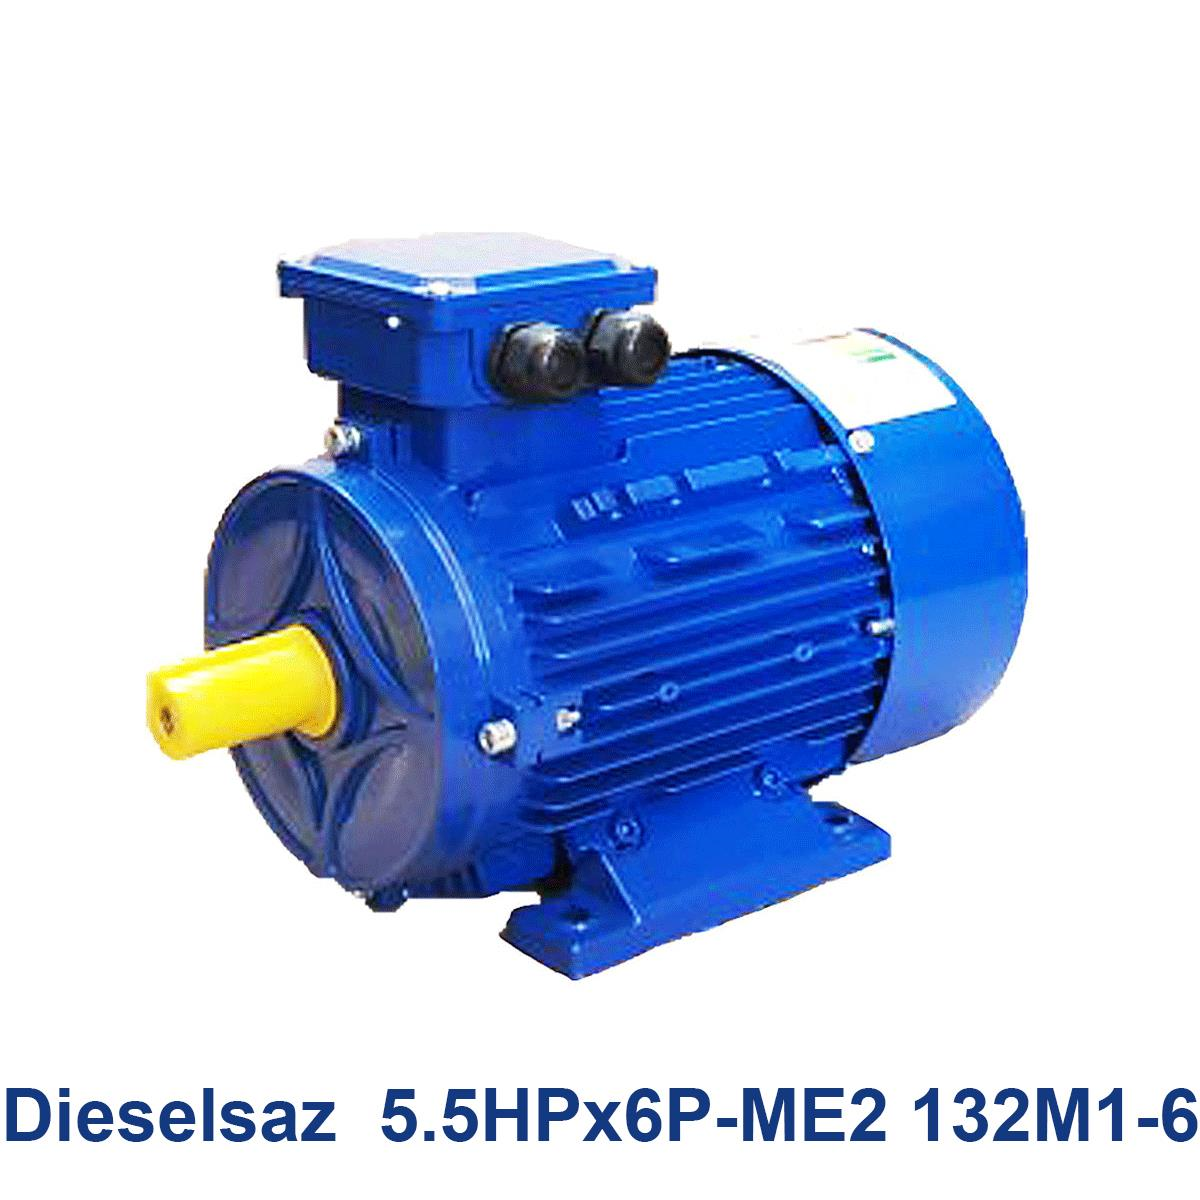 Dieselsaz--5.5HPx6P-ME2-132M1-6